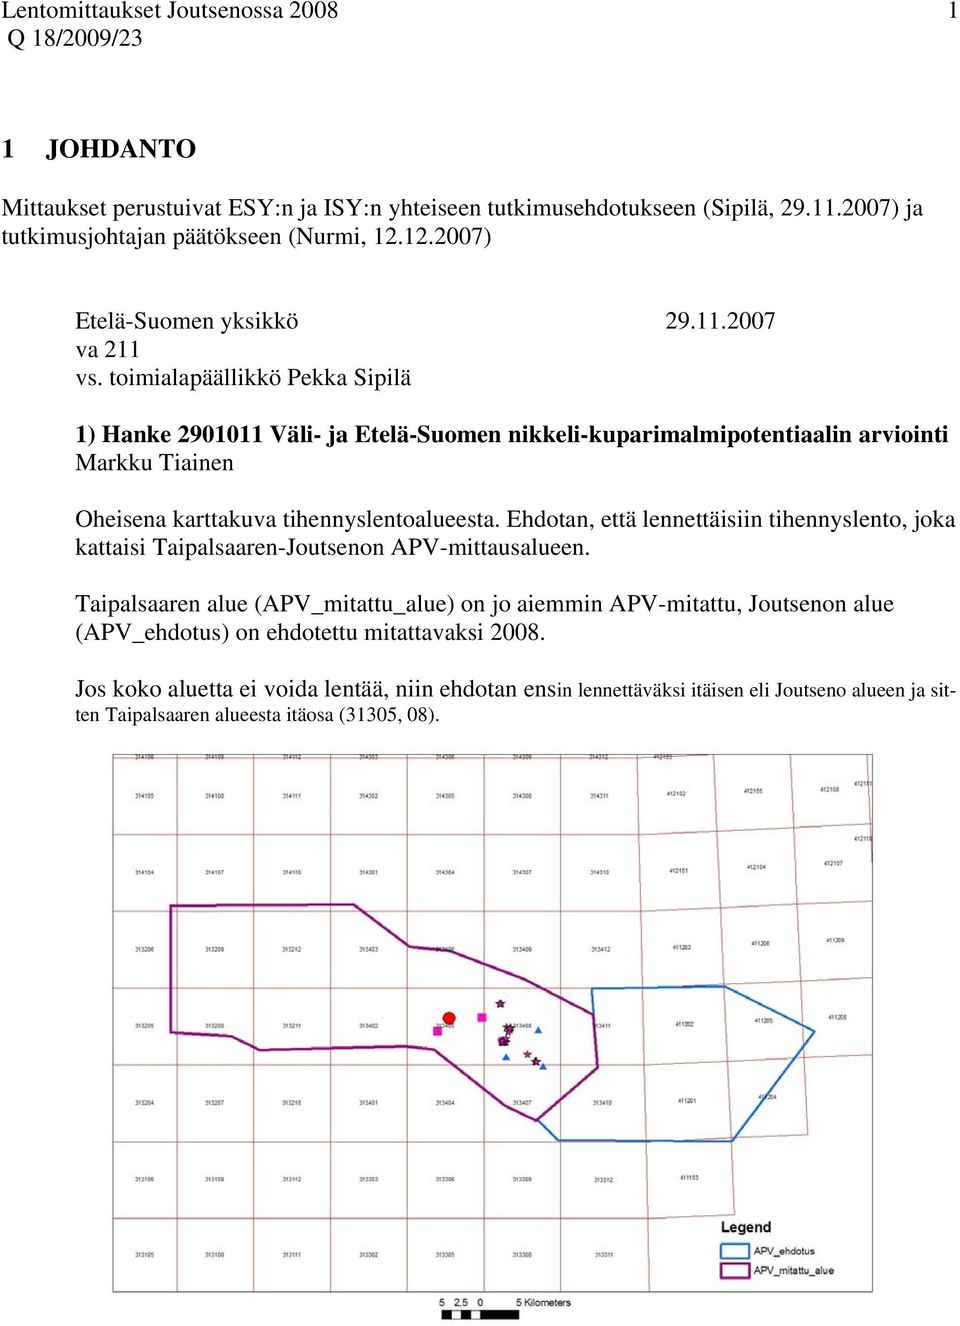 toimialapäällikkö Pekka Sipilä 1) Hanke 2901011 Väli- ja Etelä-Suomen nikkeli-kuparimalmipotentiaalin arviointi Markku Tiainen Oheisena karttakuva tihennyslentoalueesta.